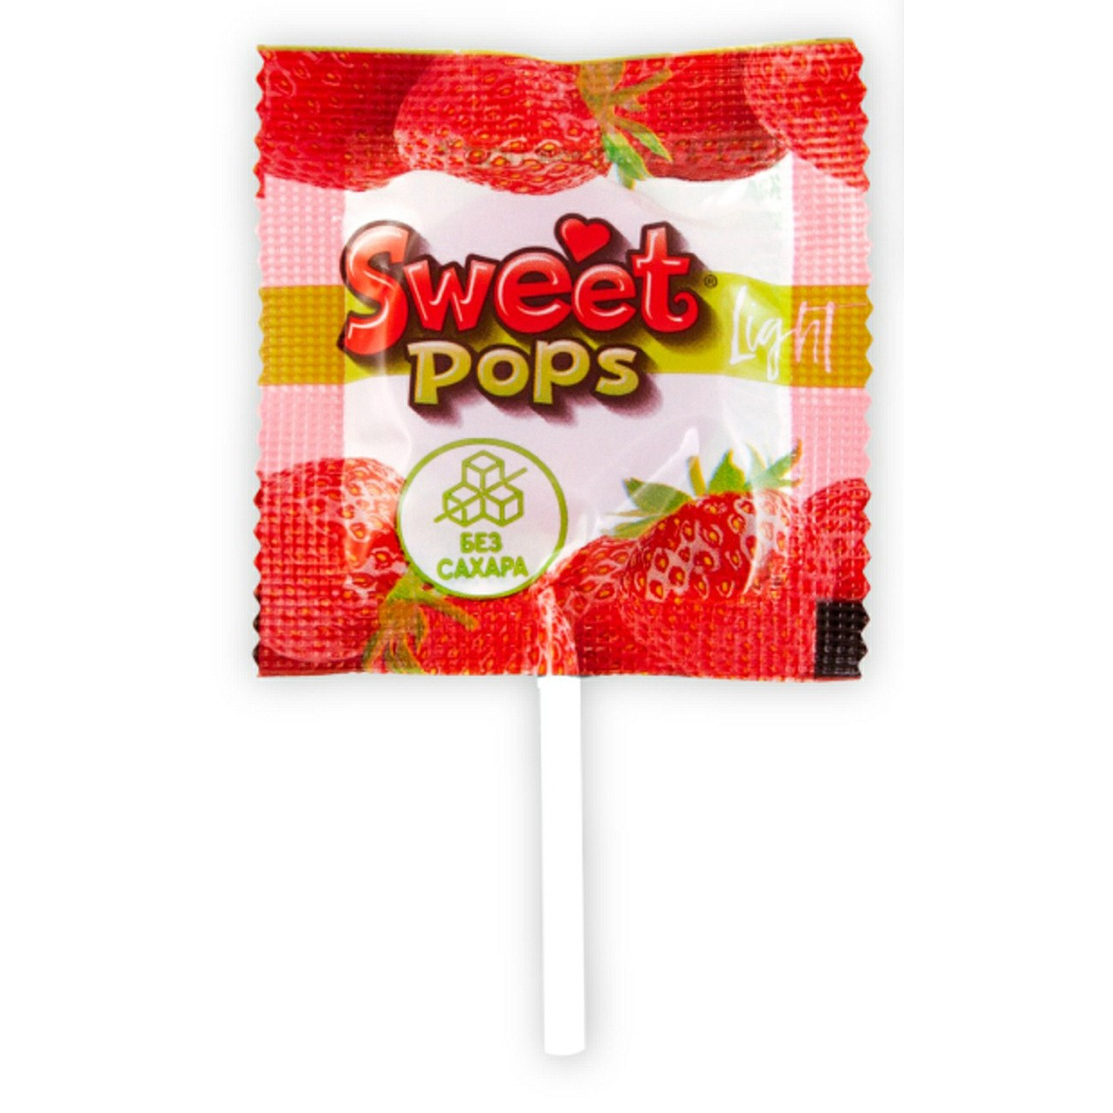 Карамель Sweet pops light без сахара 10 г в ассортименте леденцовая карамель рот фронт барбарис 250 г